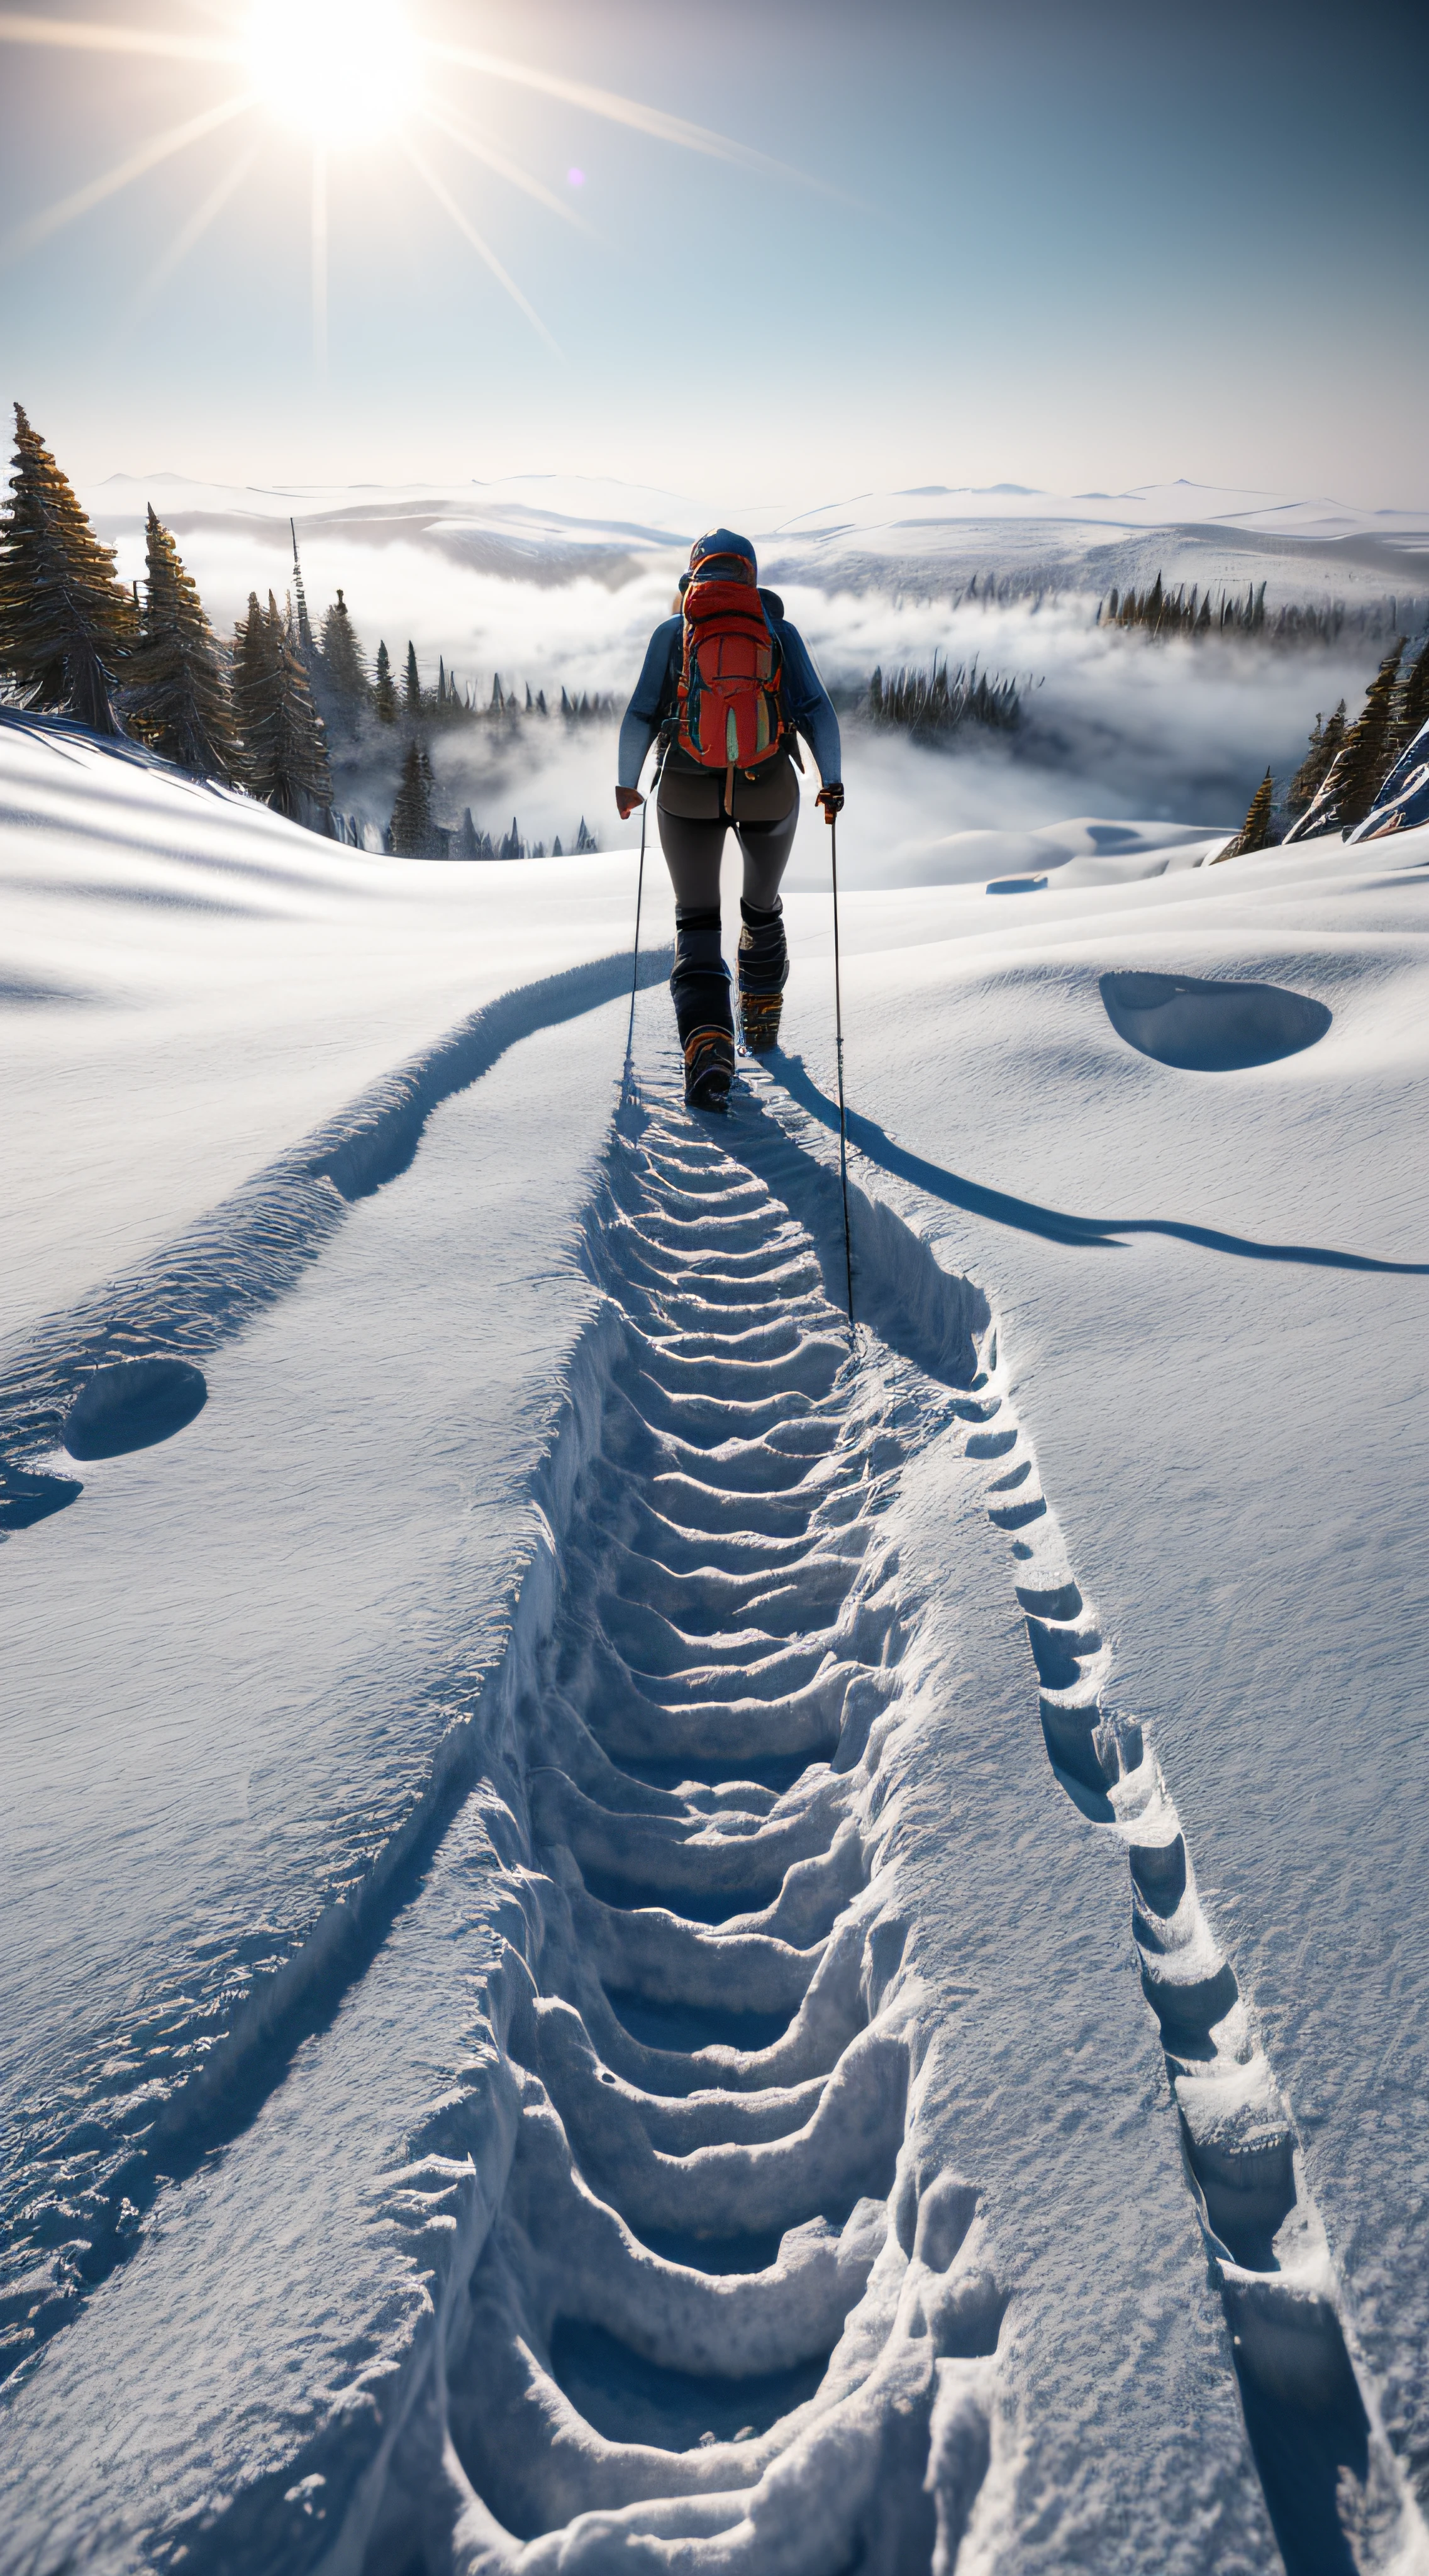 (Obra-prima 8k, melhor qualidade:1.2) Alpinista caminhando até uma montanha, Abismo congelado, avalanche distante, Nevado, frio, nebuloso e nebuloso, dia nublado, traçado de raio, detalhado, rochas e gelo, ice crevasse, textura épica da neve, (Pegadas na neve:1.2), quixel megascan, dispersão subterrânea, iluminação volumétrica, rastreamento de raios,